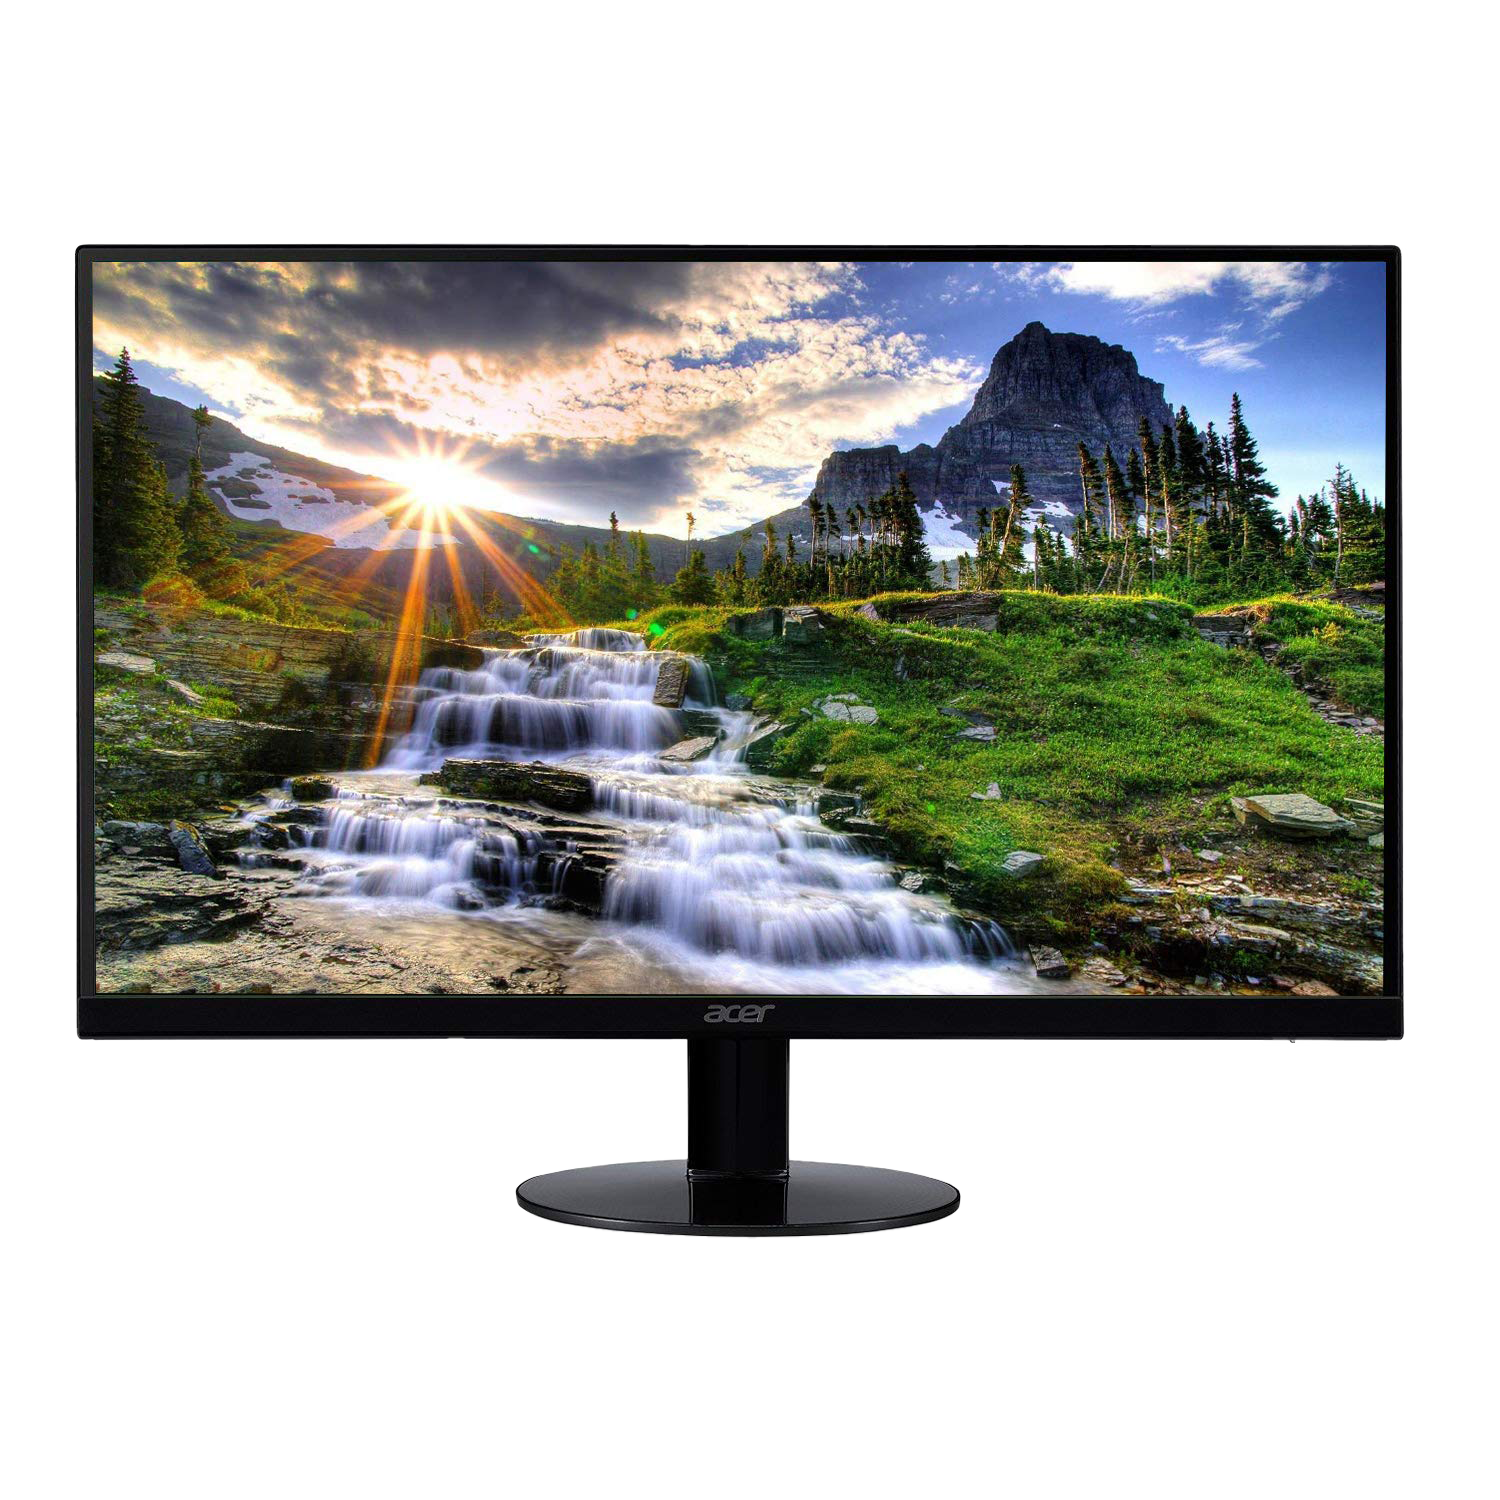 Acer SB220Q monitor